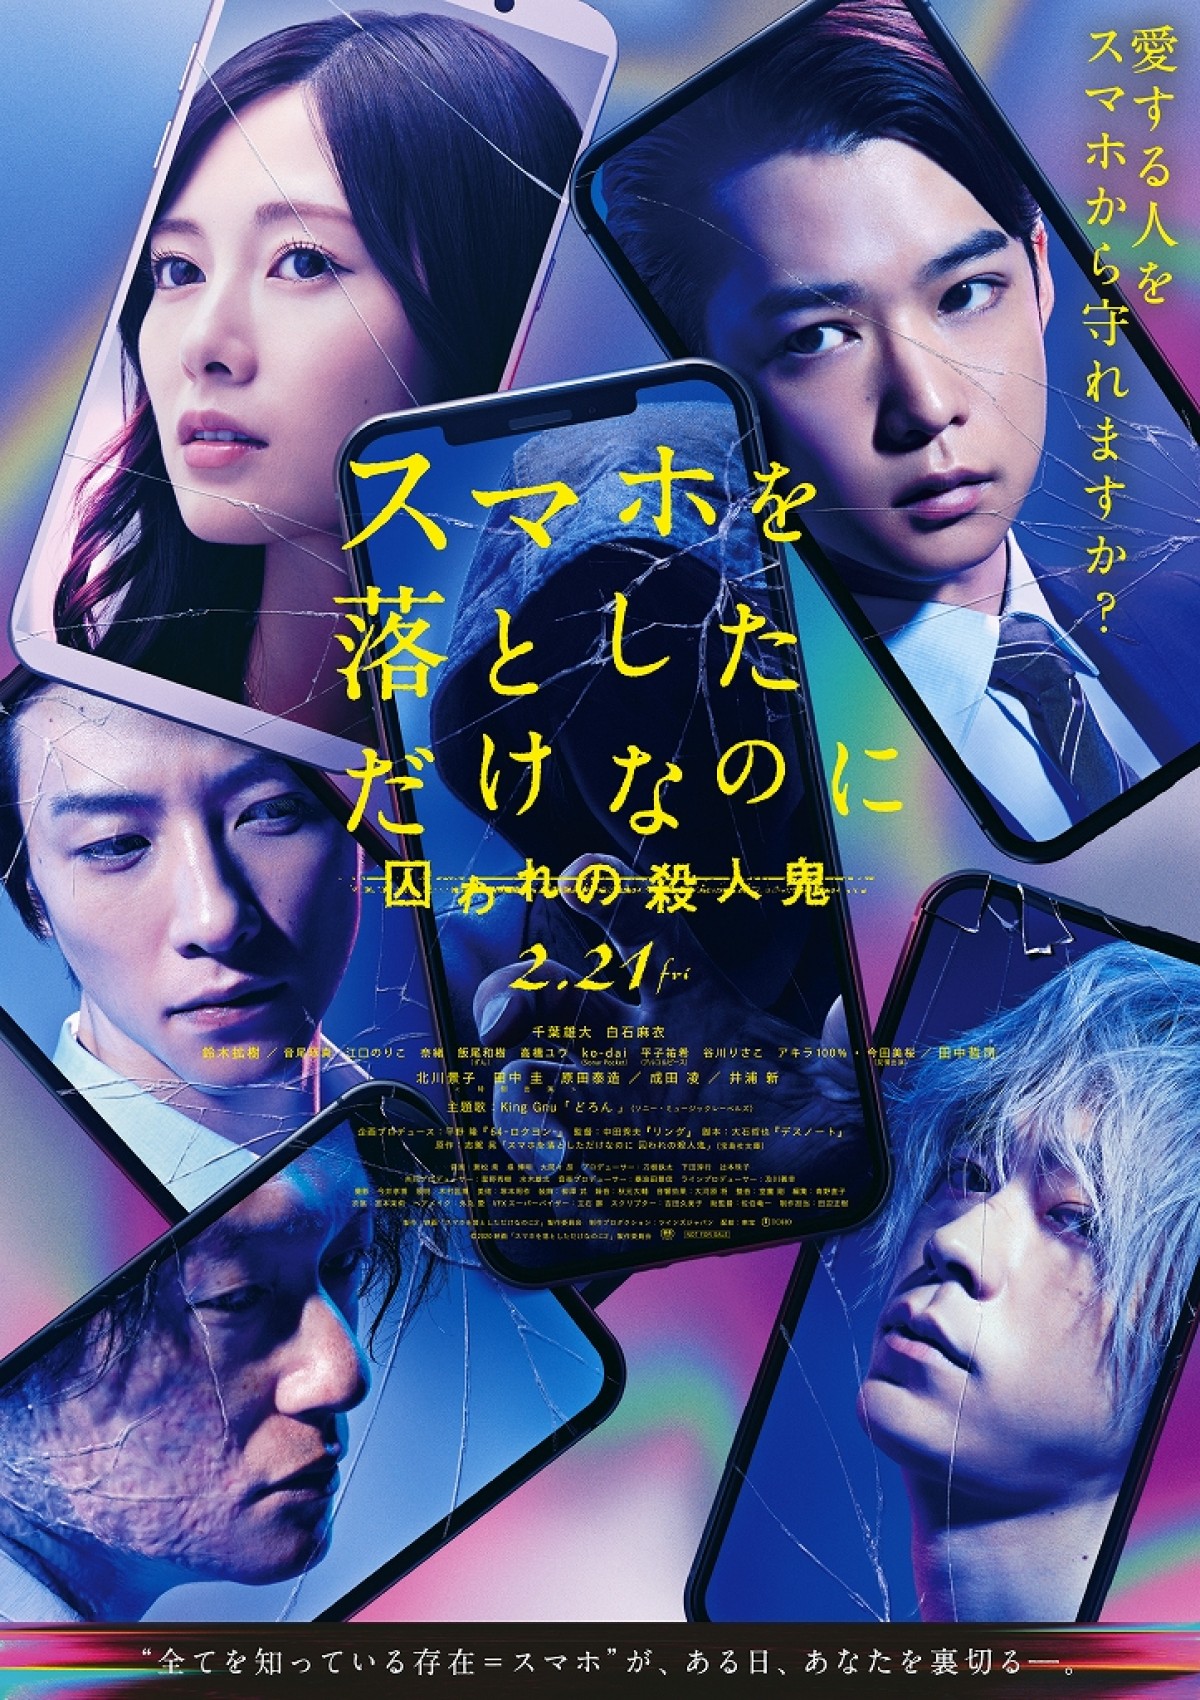 【映画ランキング】『Fukushima 50』V2！春休み大作アニメ公開延期で上位の順位変動なし